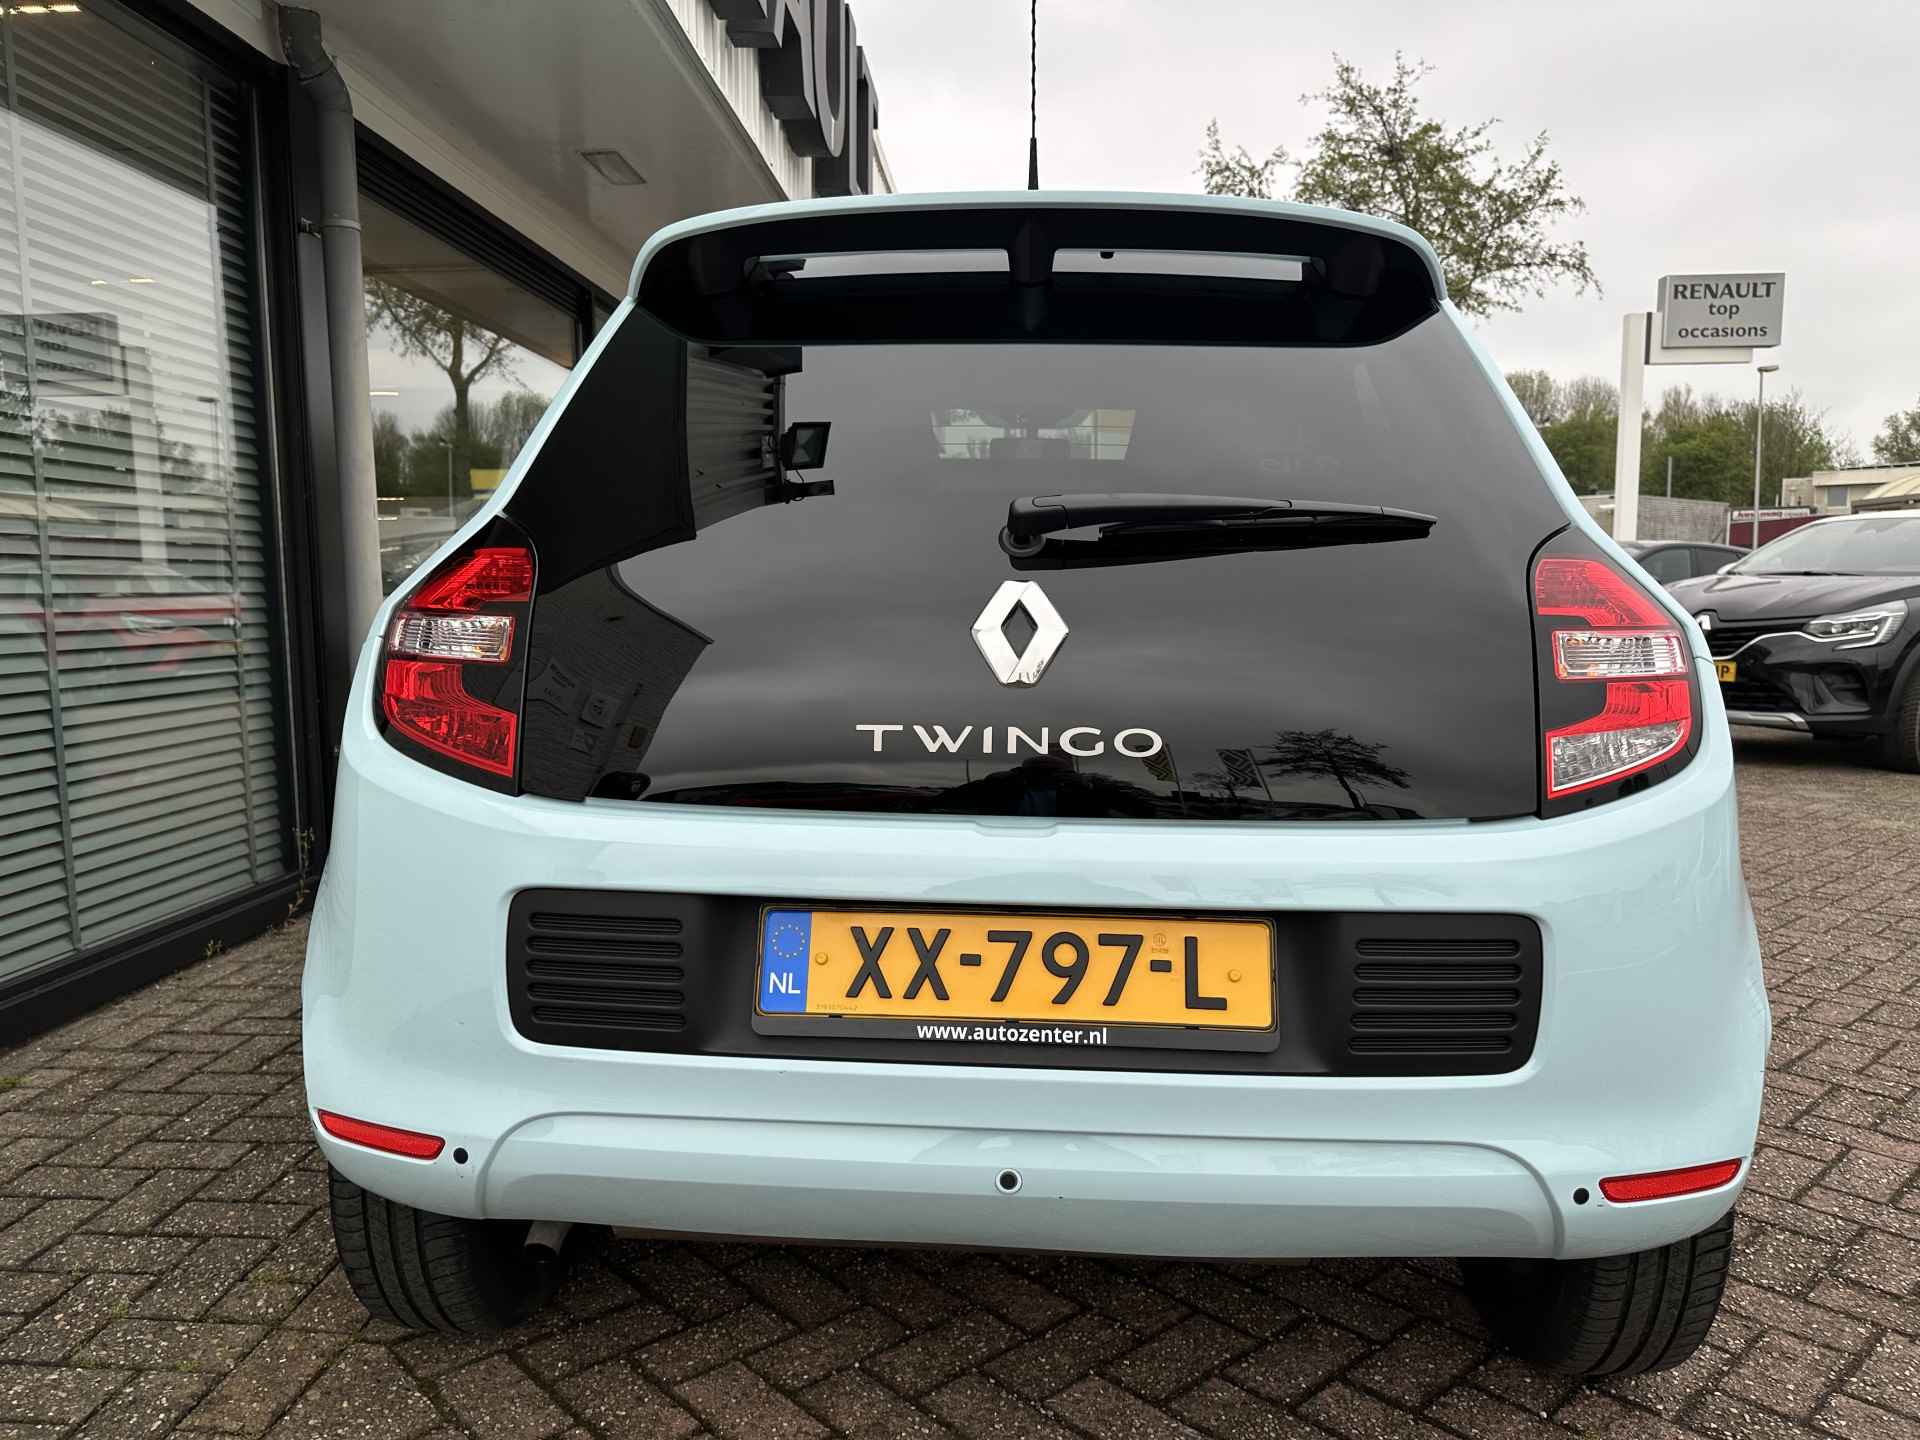 Renault Twingo 1.0 SCe 70 Limited | weinig km's! | parkeersensor | privacy glas | navigatie | cruise control | tijdelijk gratis Top Afleverpakket twv Eur 695 - 12/31